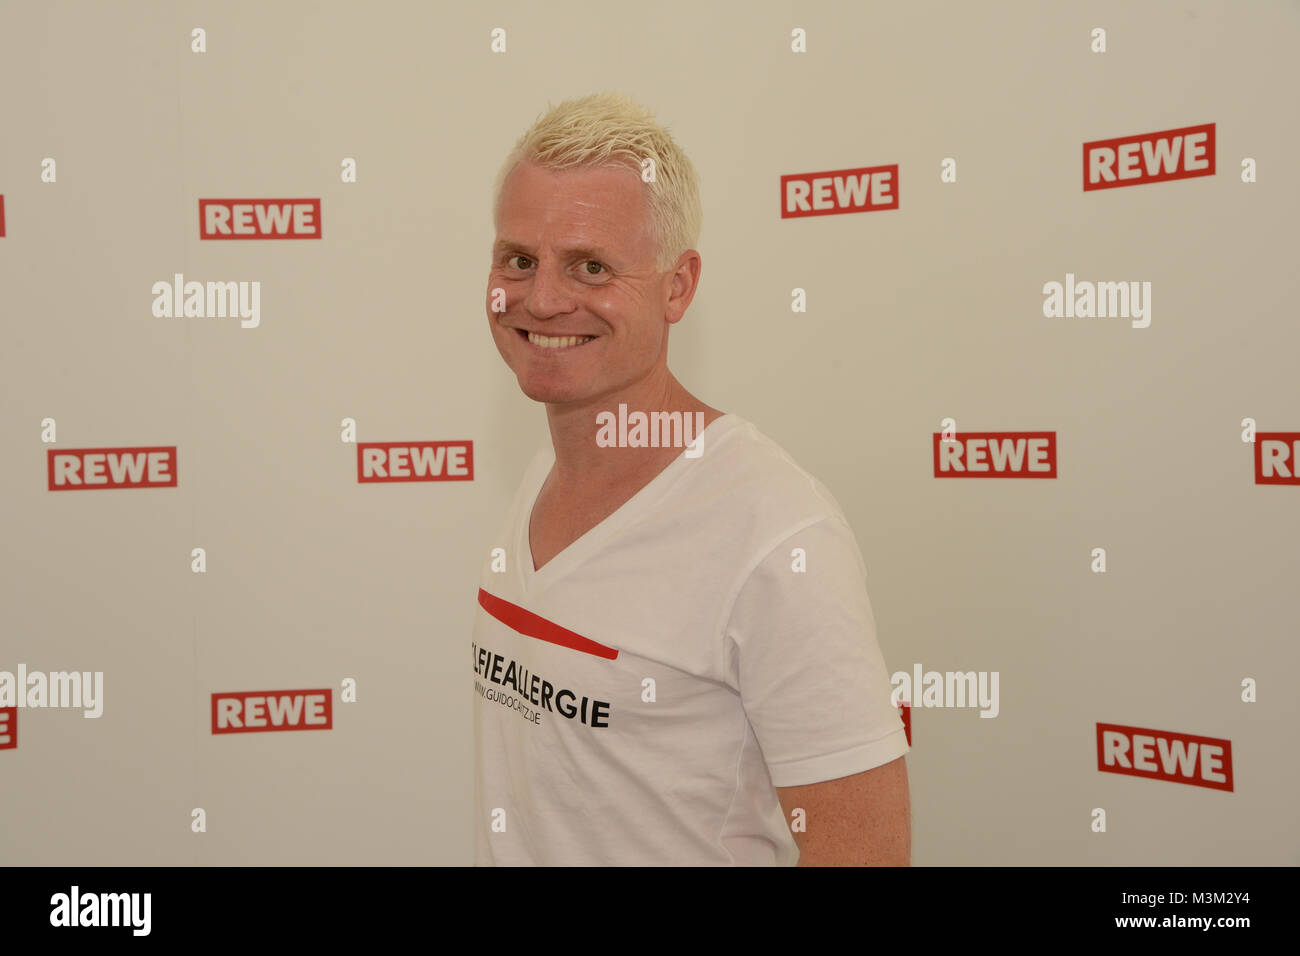 Der deutsche Fernseh Moderator Guido Cantz beim Fotocall auf dem Rewe Family Day 2016 auf dem Flughafen in Koeln Bonn am 11.06.2016. Stock Photo